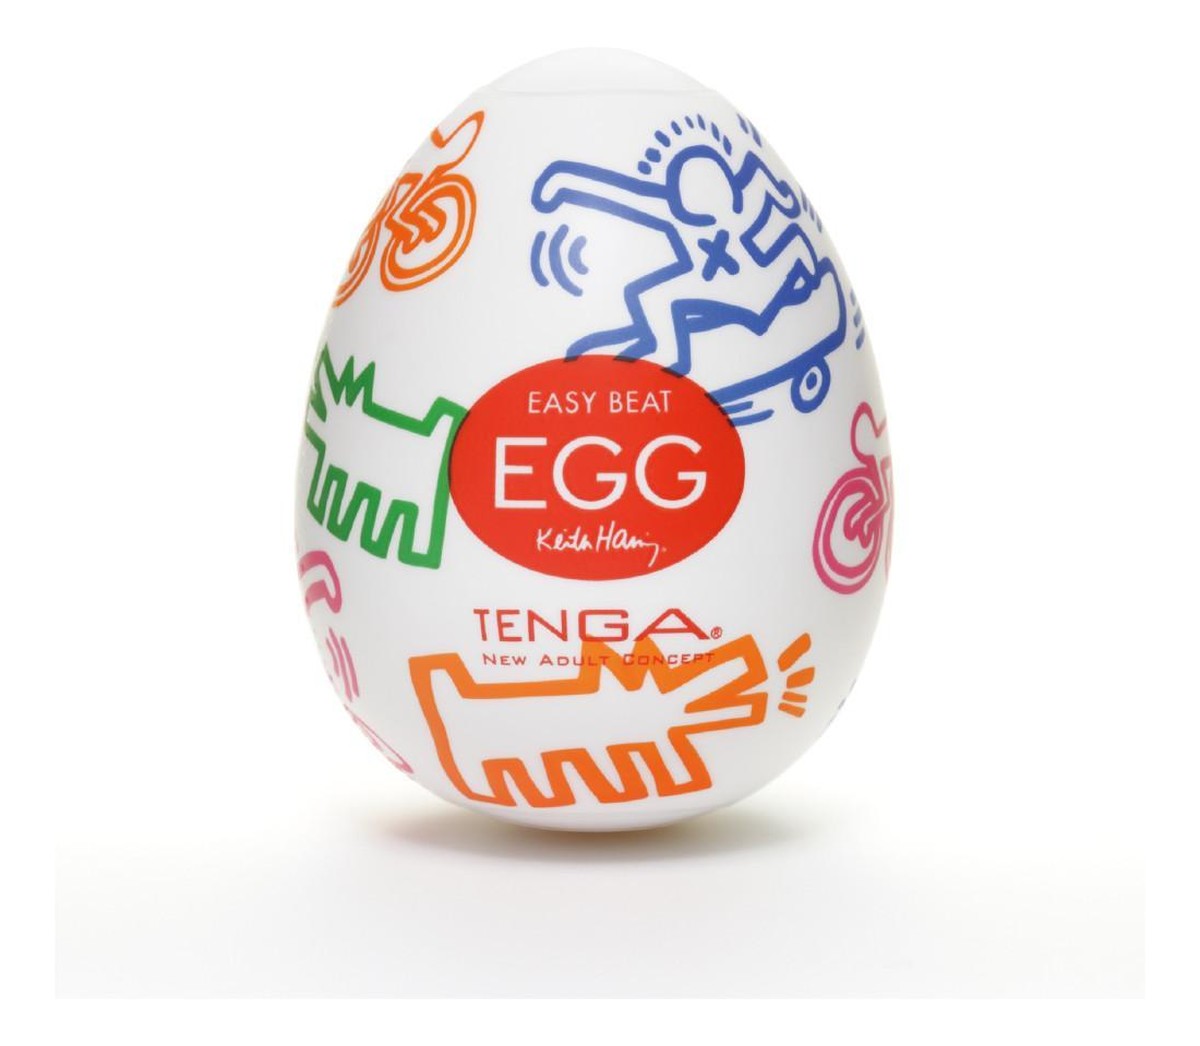 Easy beat egg keith haring street jednorazowy masturbator w kształcie jajka